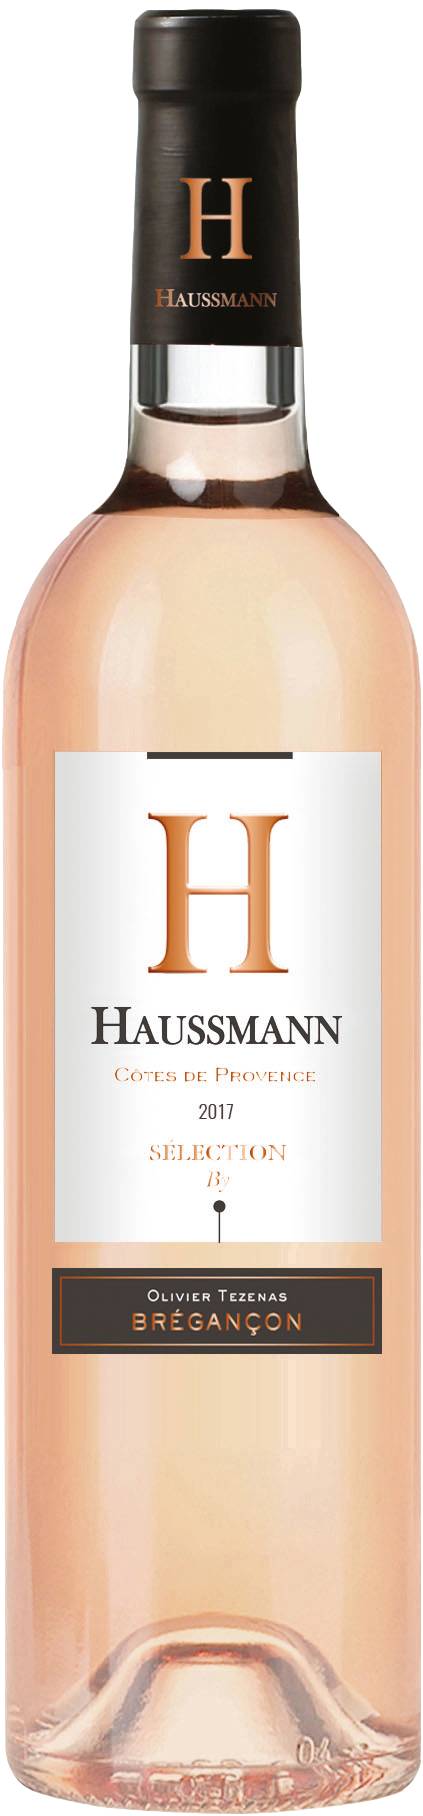 H Haussmann By Bregancon - Vin rosé Provence corse côtes de Provence 2017 (750 ml)